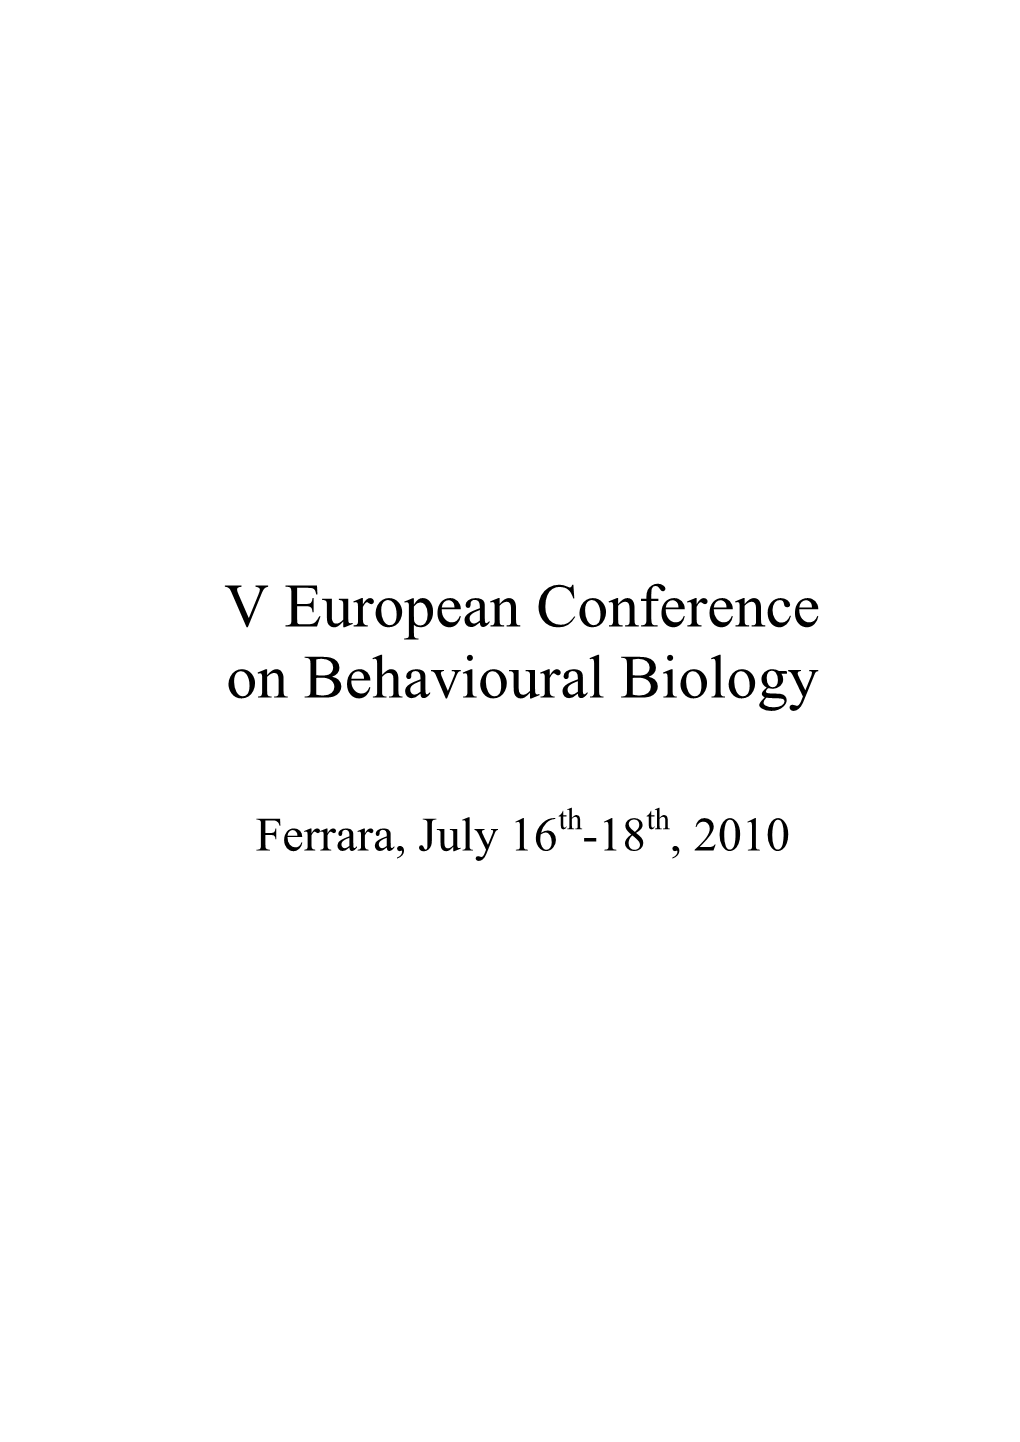 V European Conference on Behavioural Biology